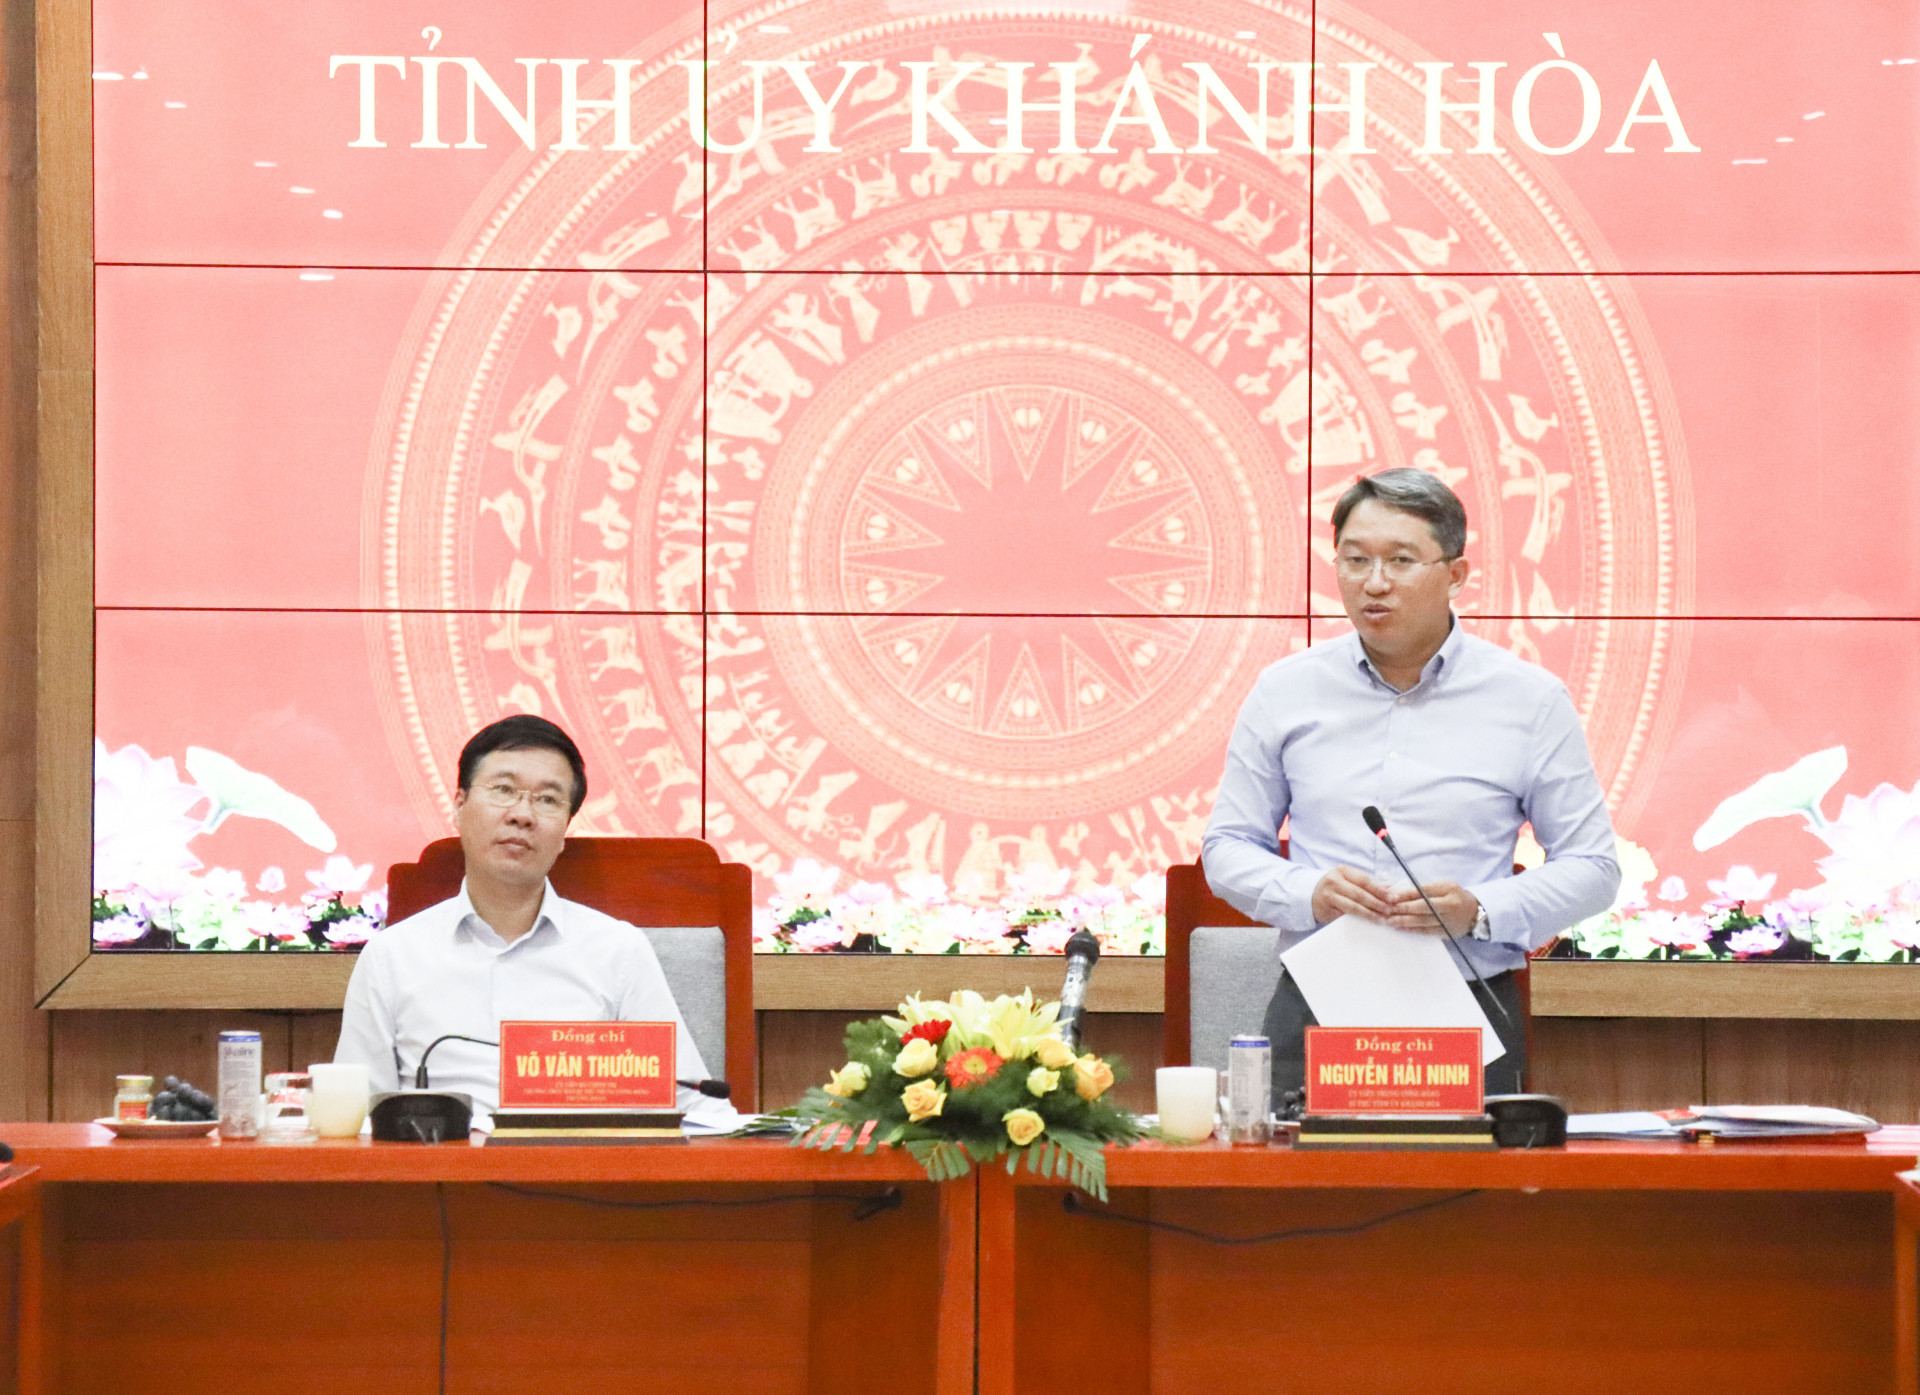 Bí thư Tỉnh ủy Khánh Hòa Nguyễn Hải Ninh phát biểu tiếp thu ý kiến chỉ đạo của đồng chí Võ Văn Thưởng